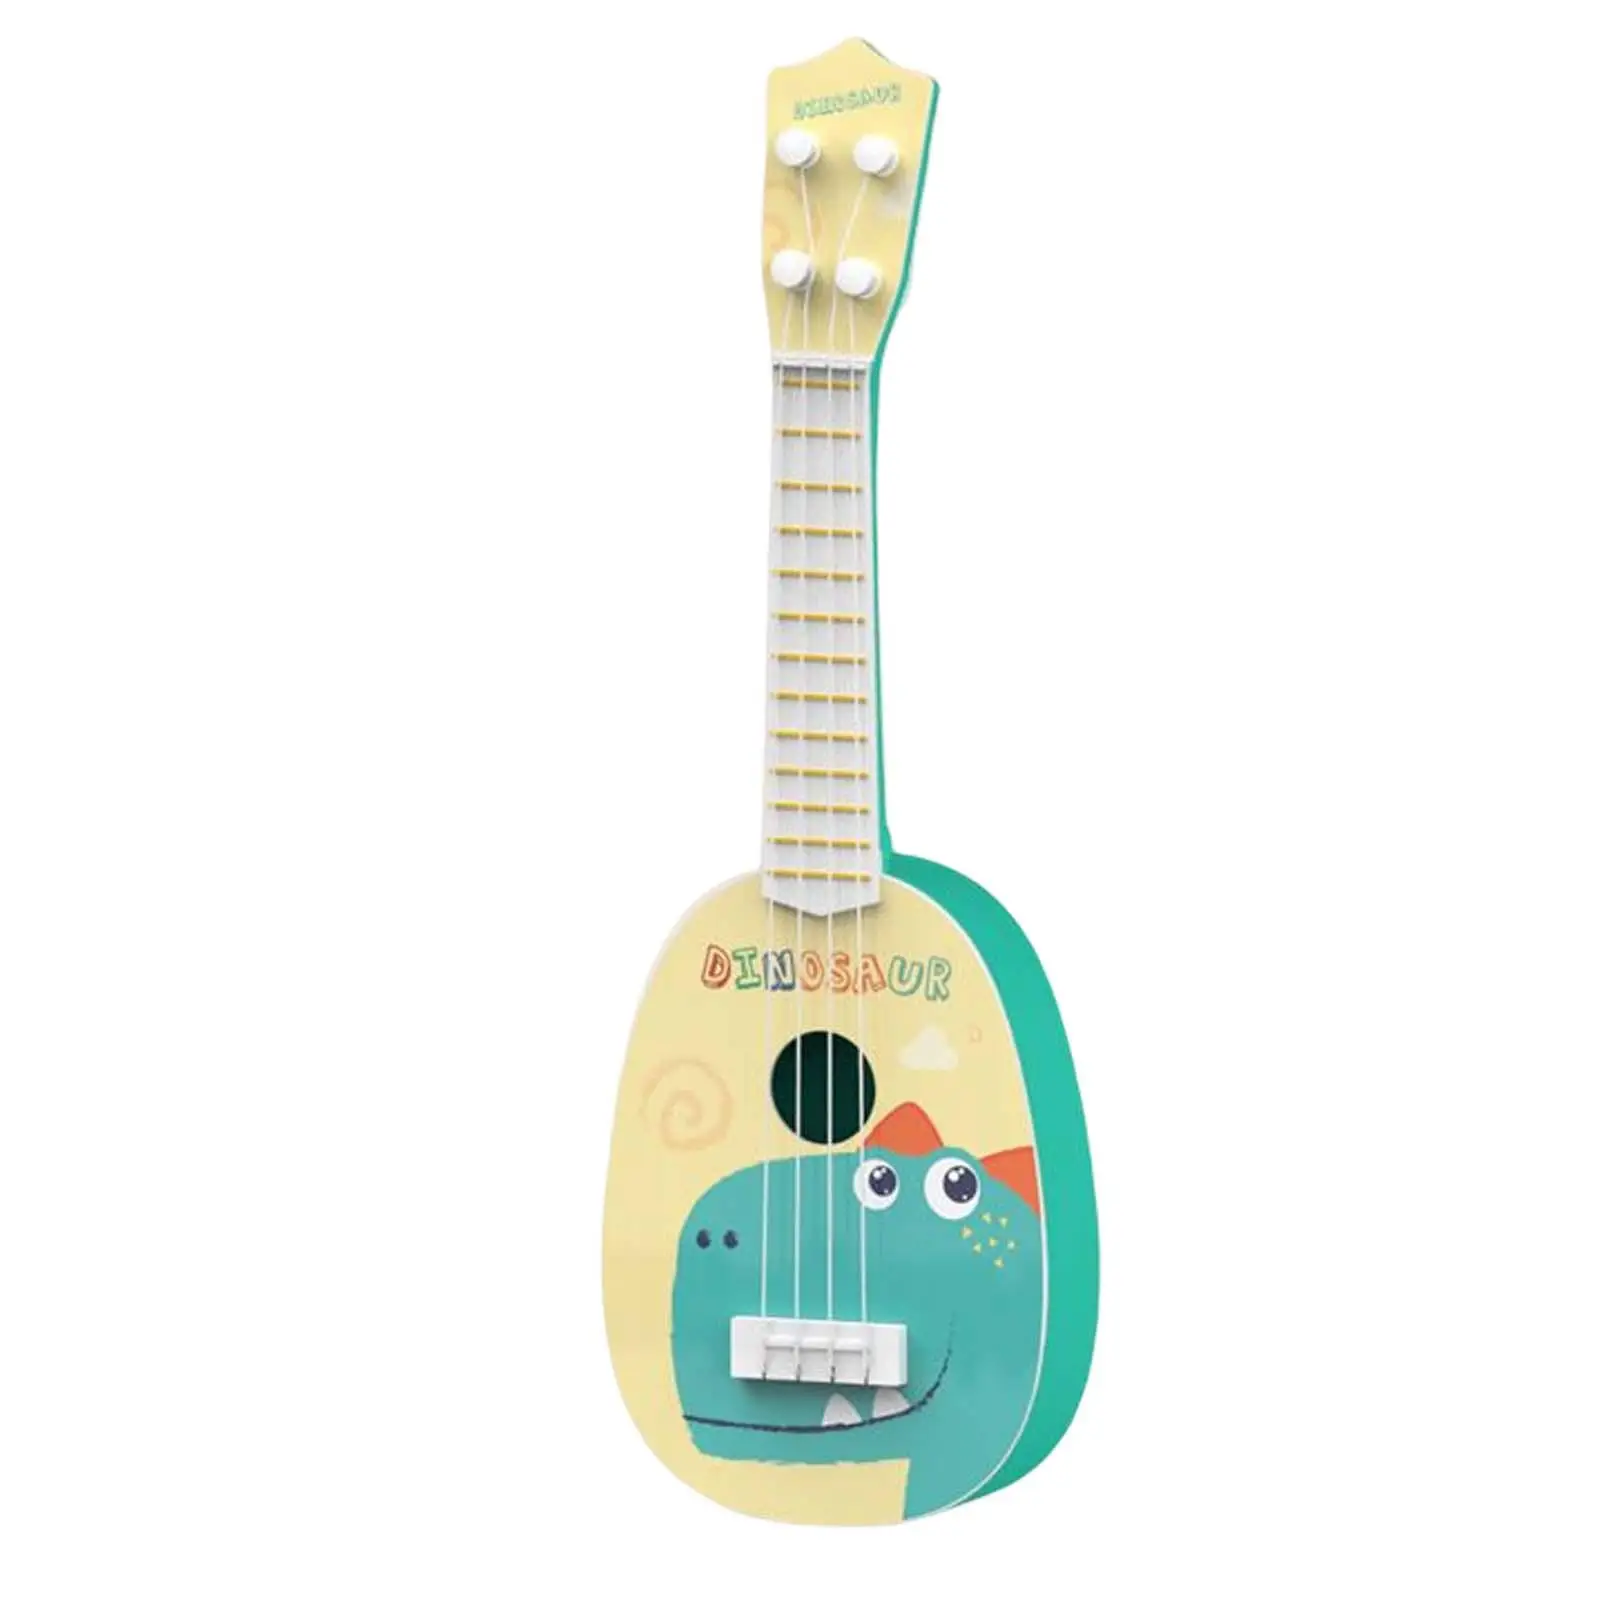 Ukulele Toys Musical Instrument Toy Mini Ukulele for Children Gifts